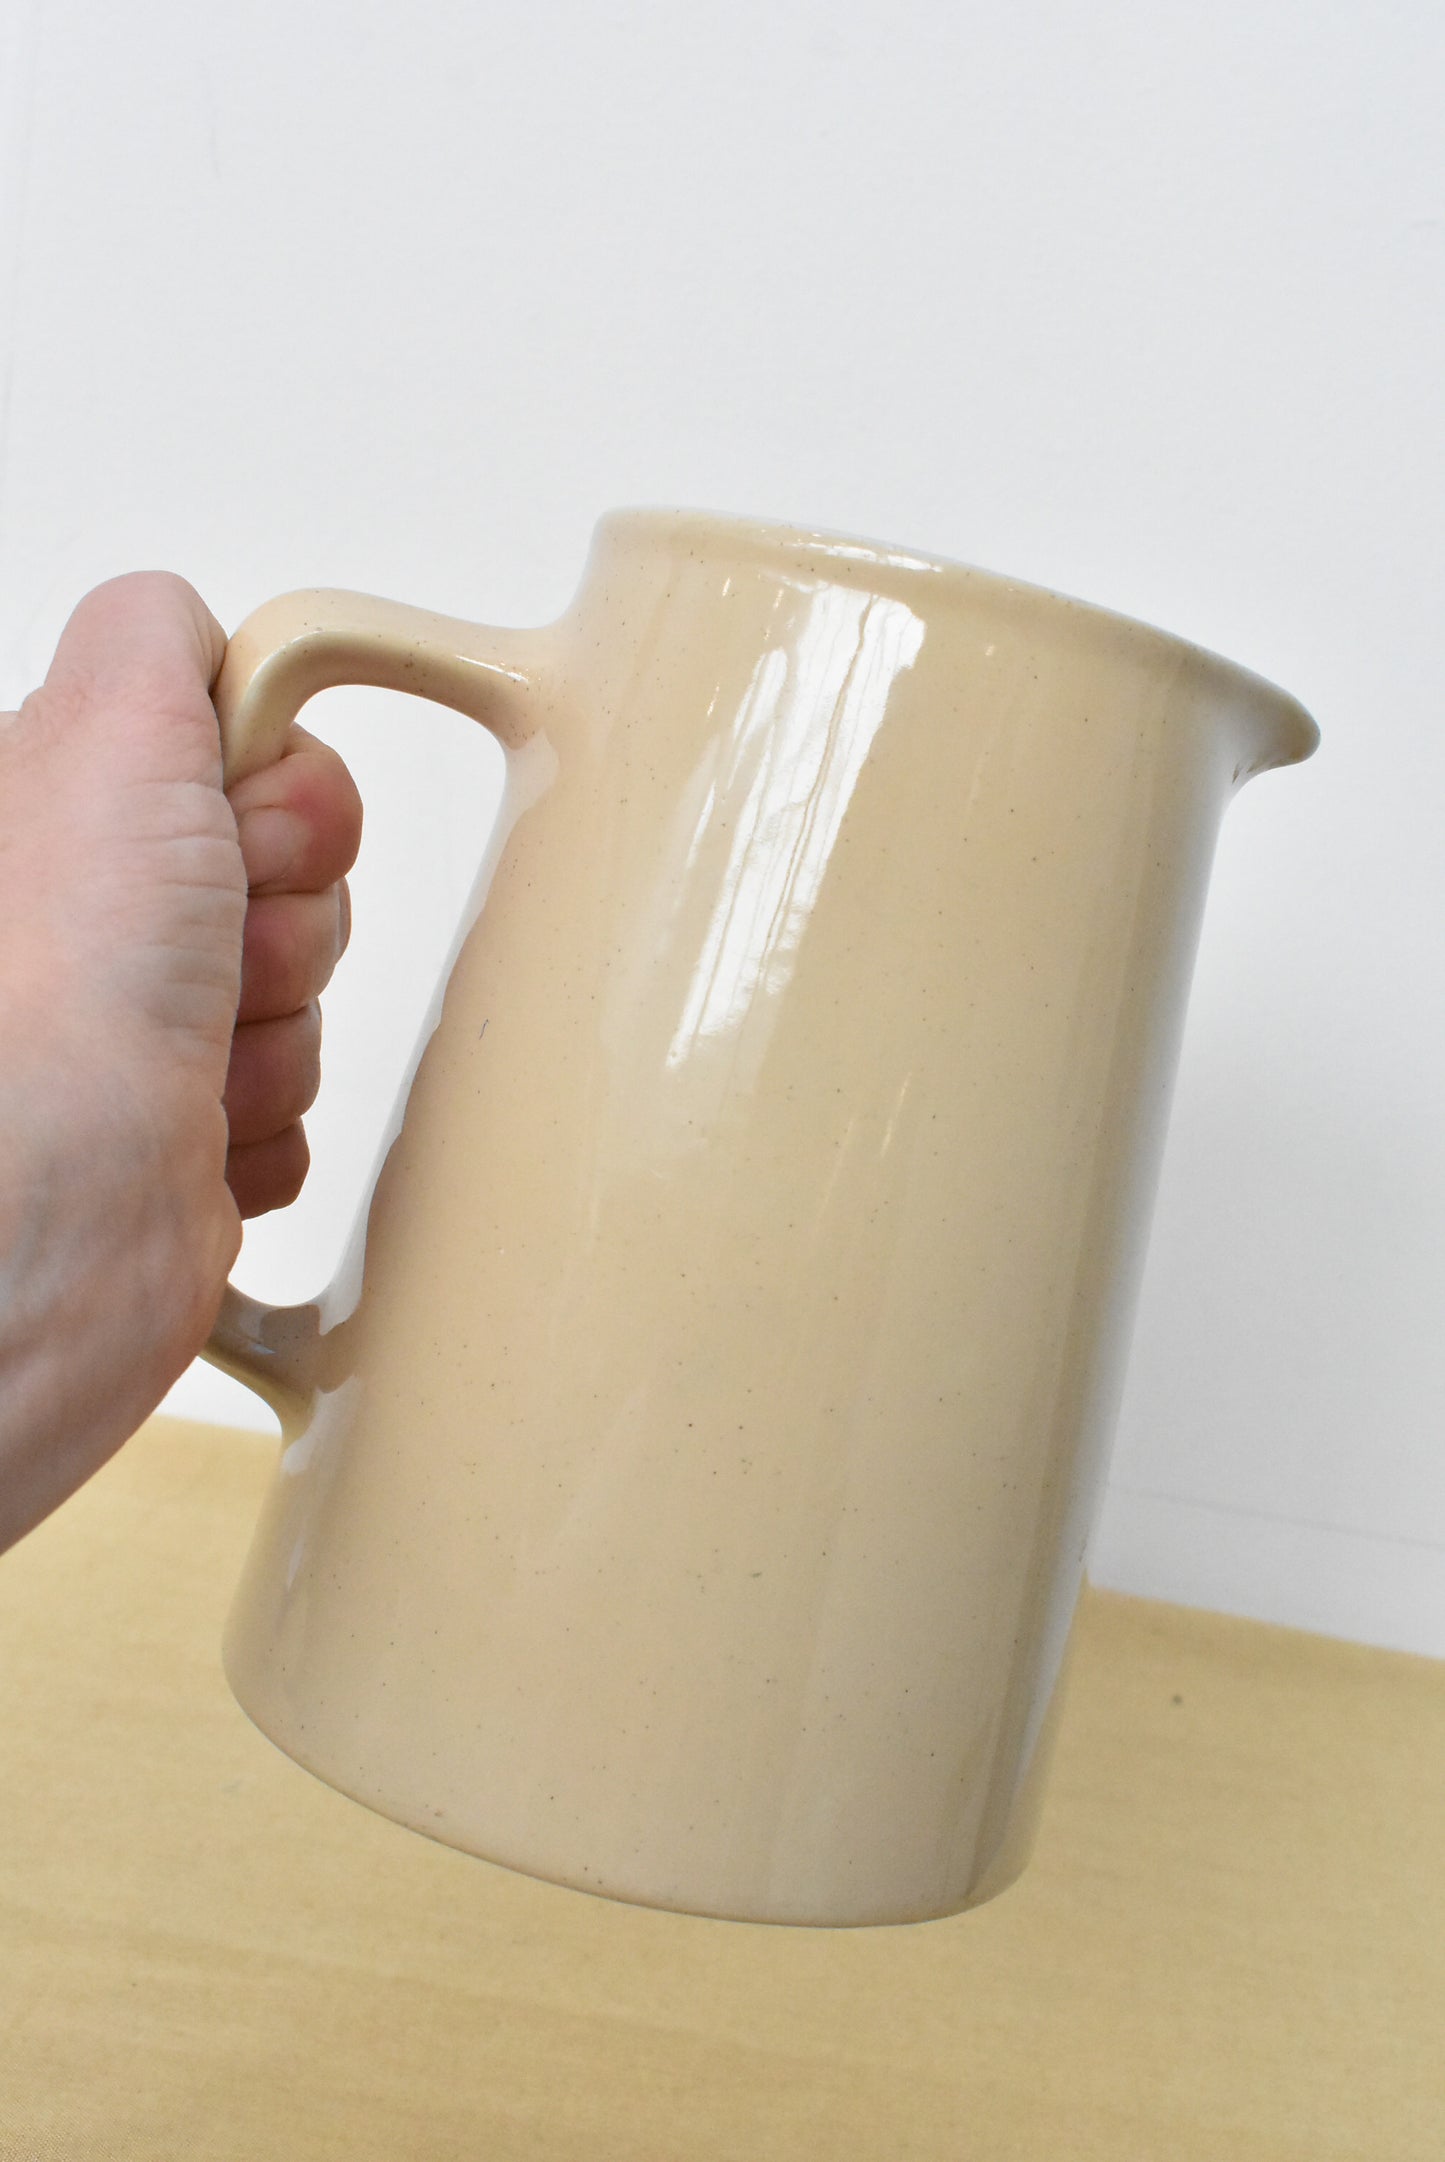 Vintage ceramic jug made in nz